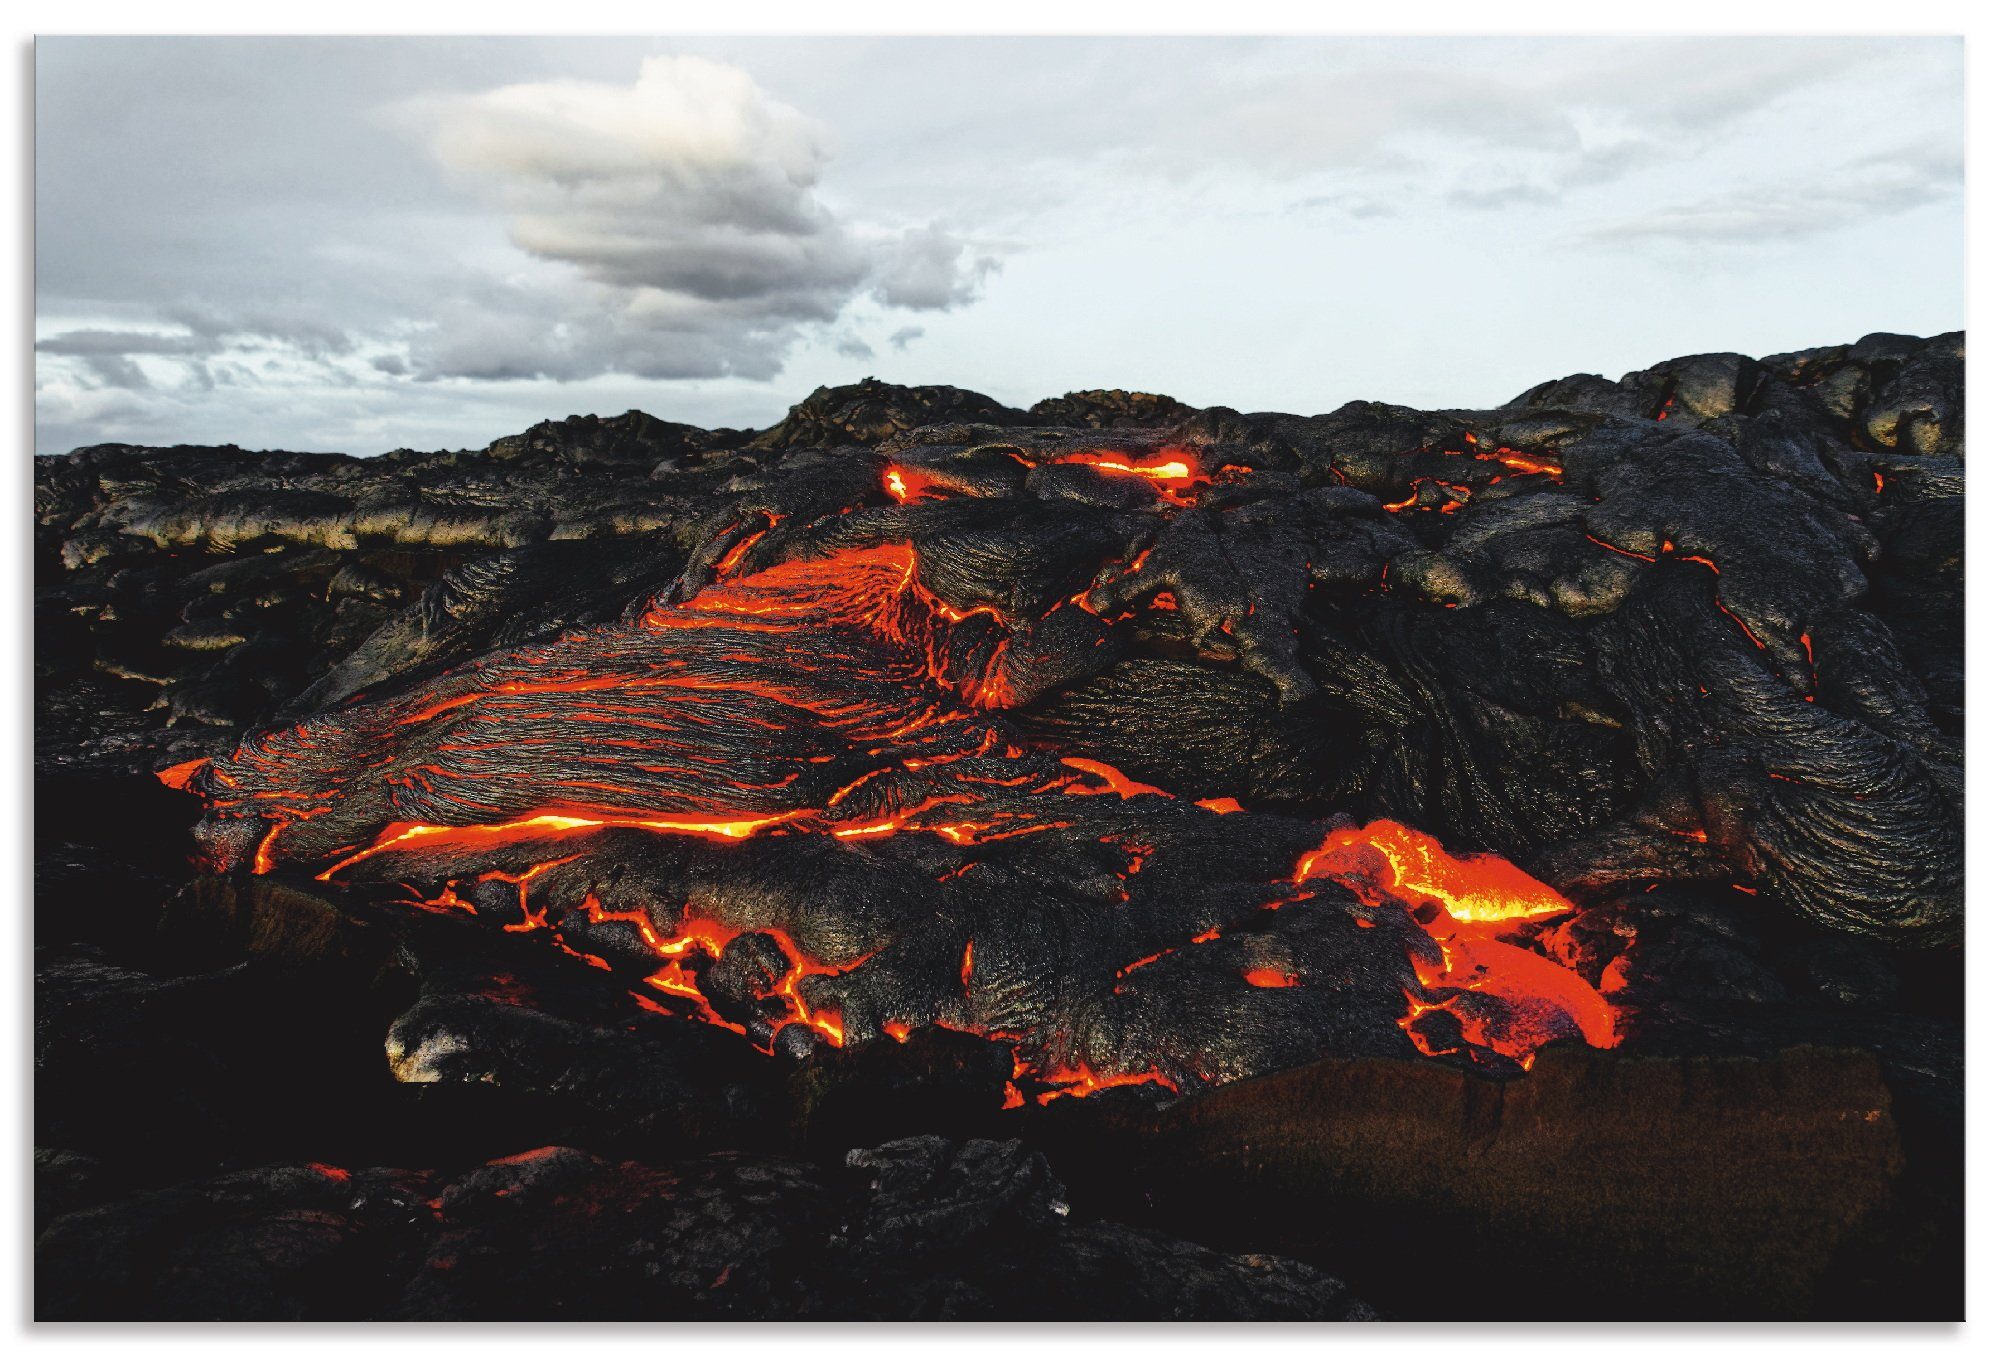 Artland Artprint Hawaï lava komt uit een spleet in de aarde in vele afmetingen & productsoorten - artprint van aluminium / artprint voor buiten, artprint op linnen, poster, muursti